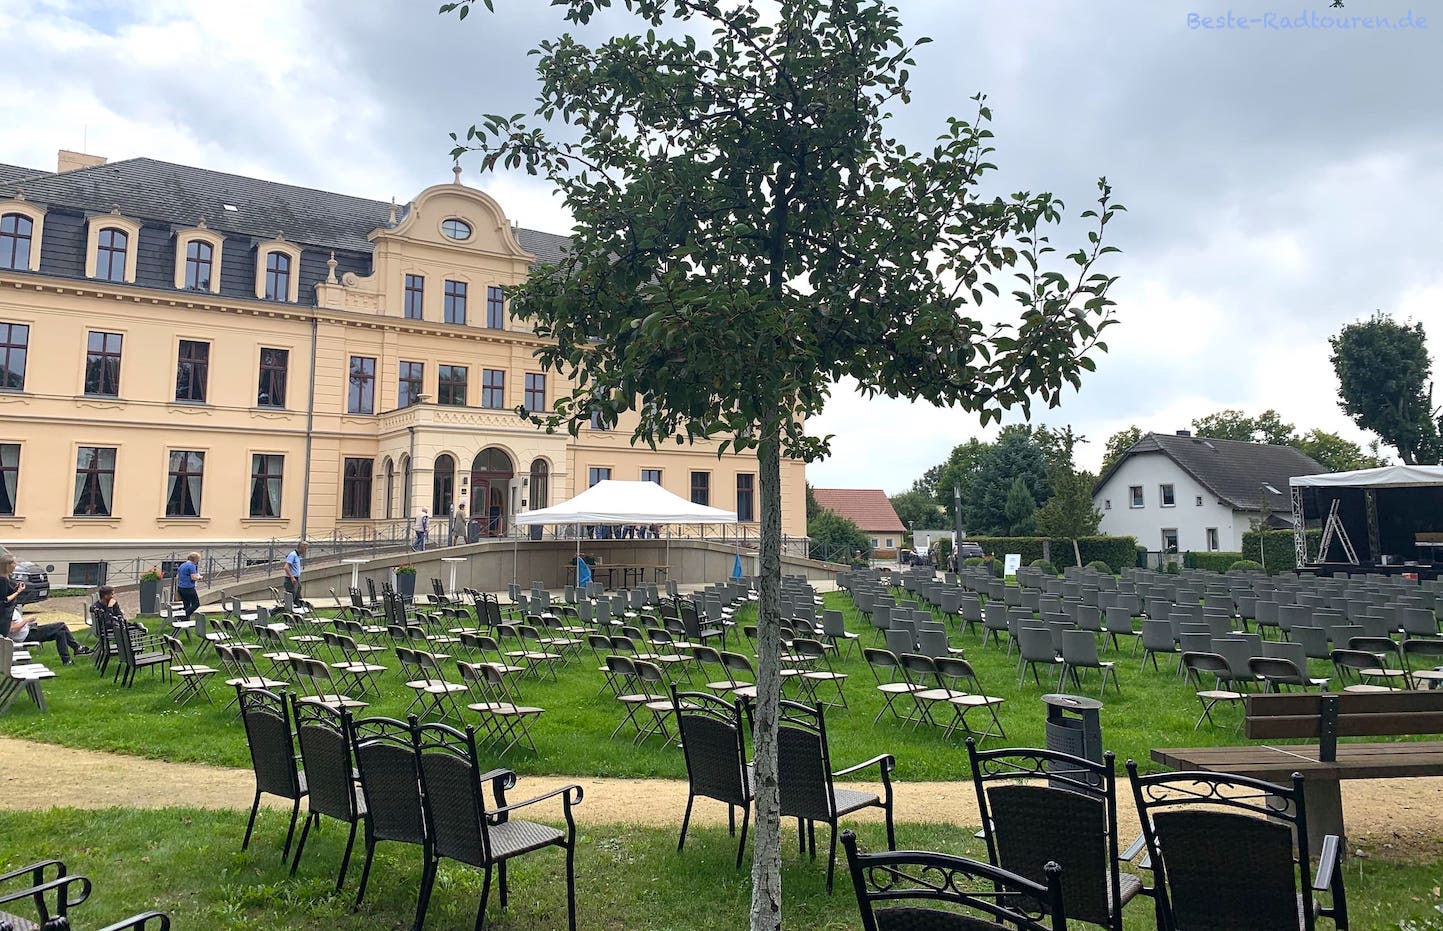 Schloss Ribbeck im Havelland, Schlosshof / Innenhof, Veranstaltung mit Bühne und Bestuhlung